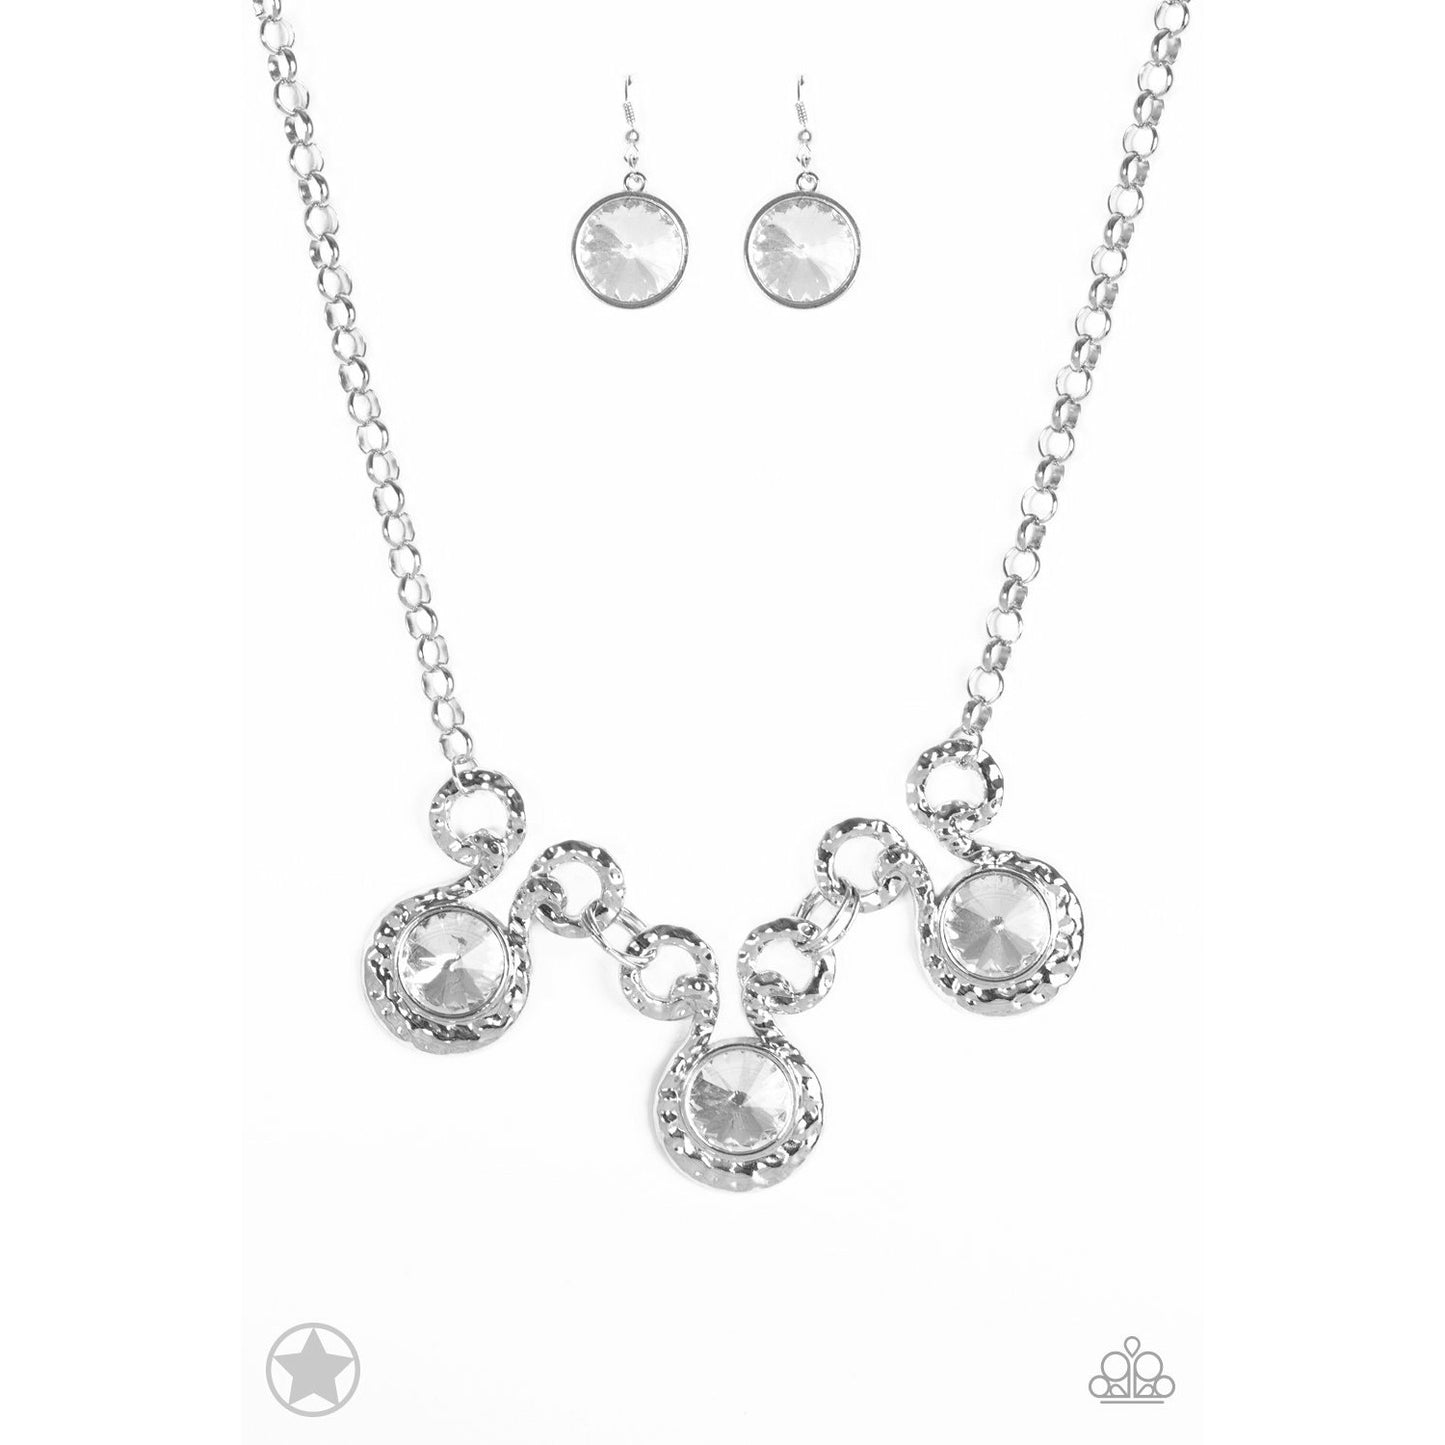 Hypnotized - Silver necklace